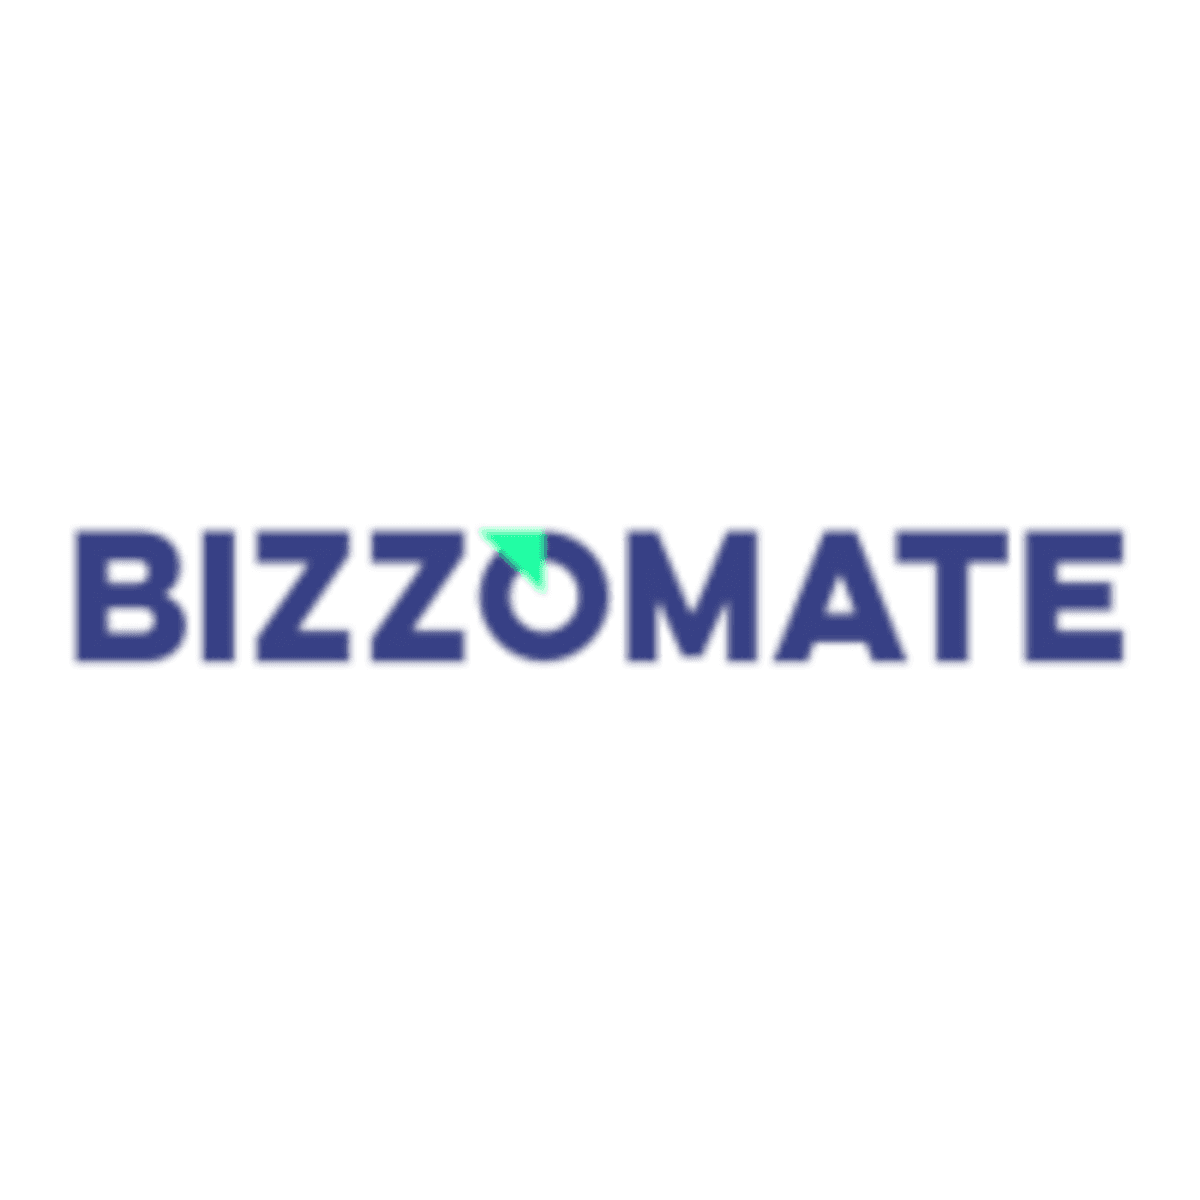 Bizzomate bekroond met partnerawards van Siemens Digital Industries Software image